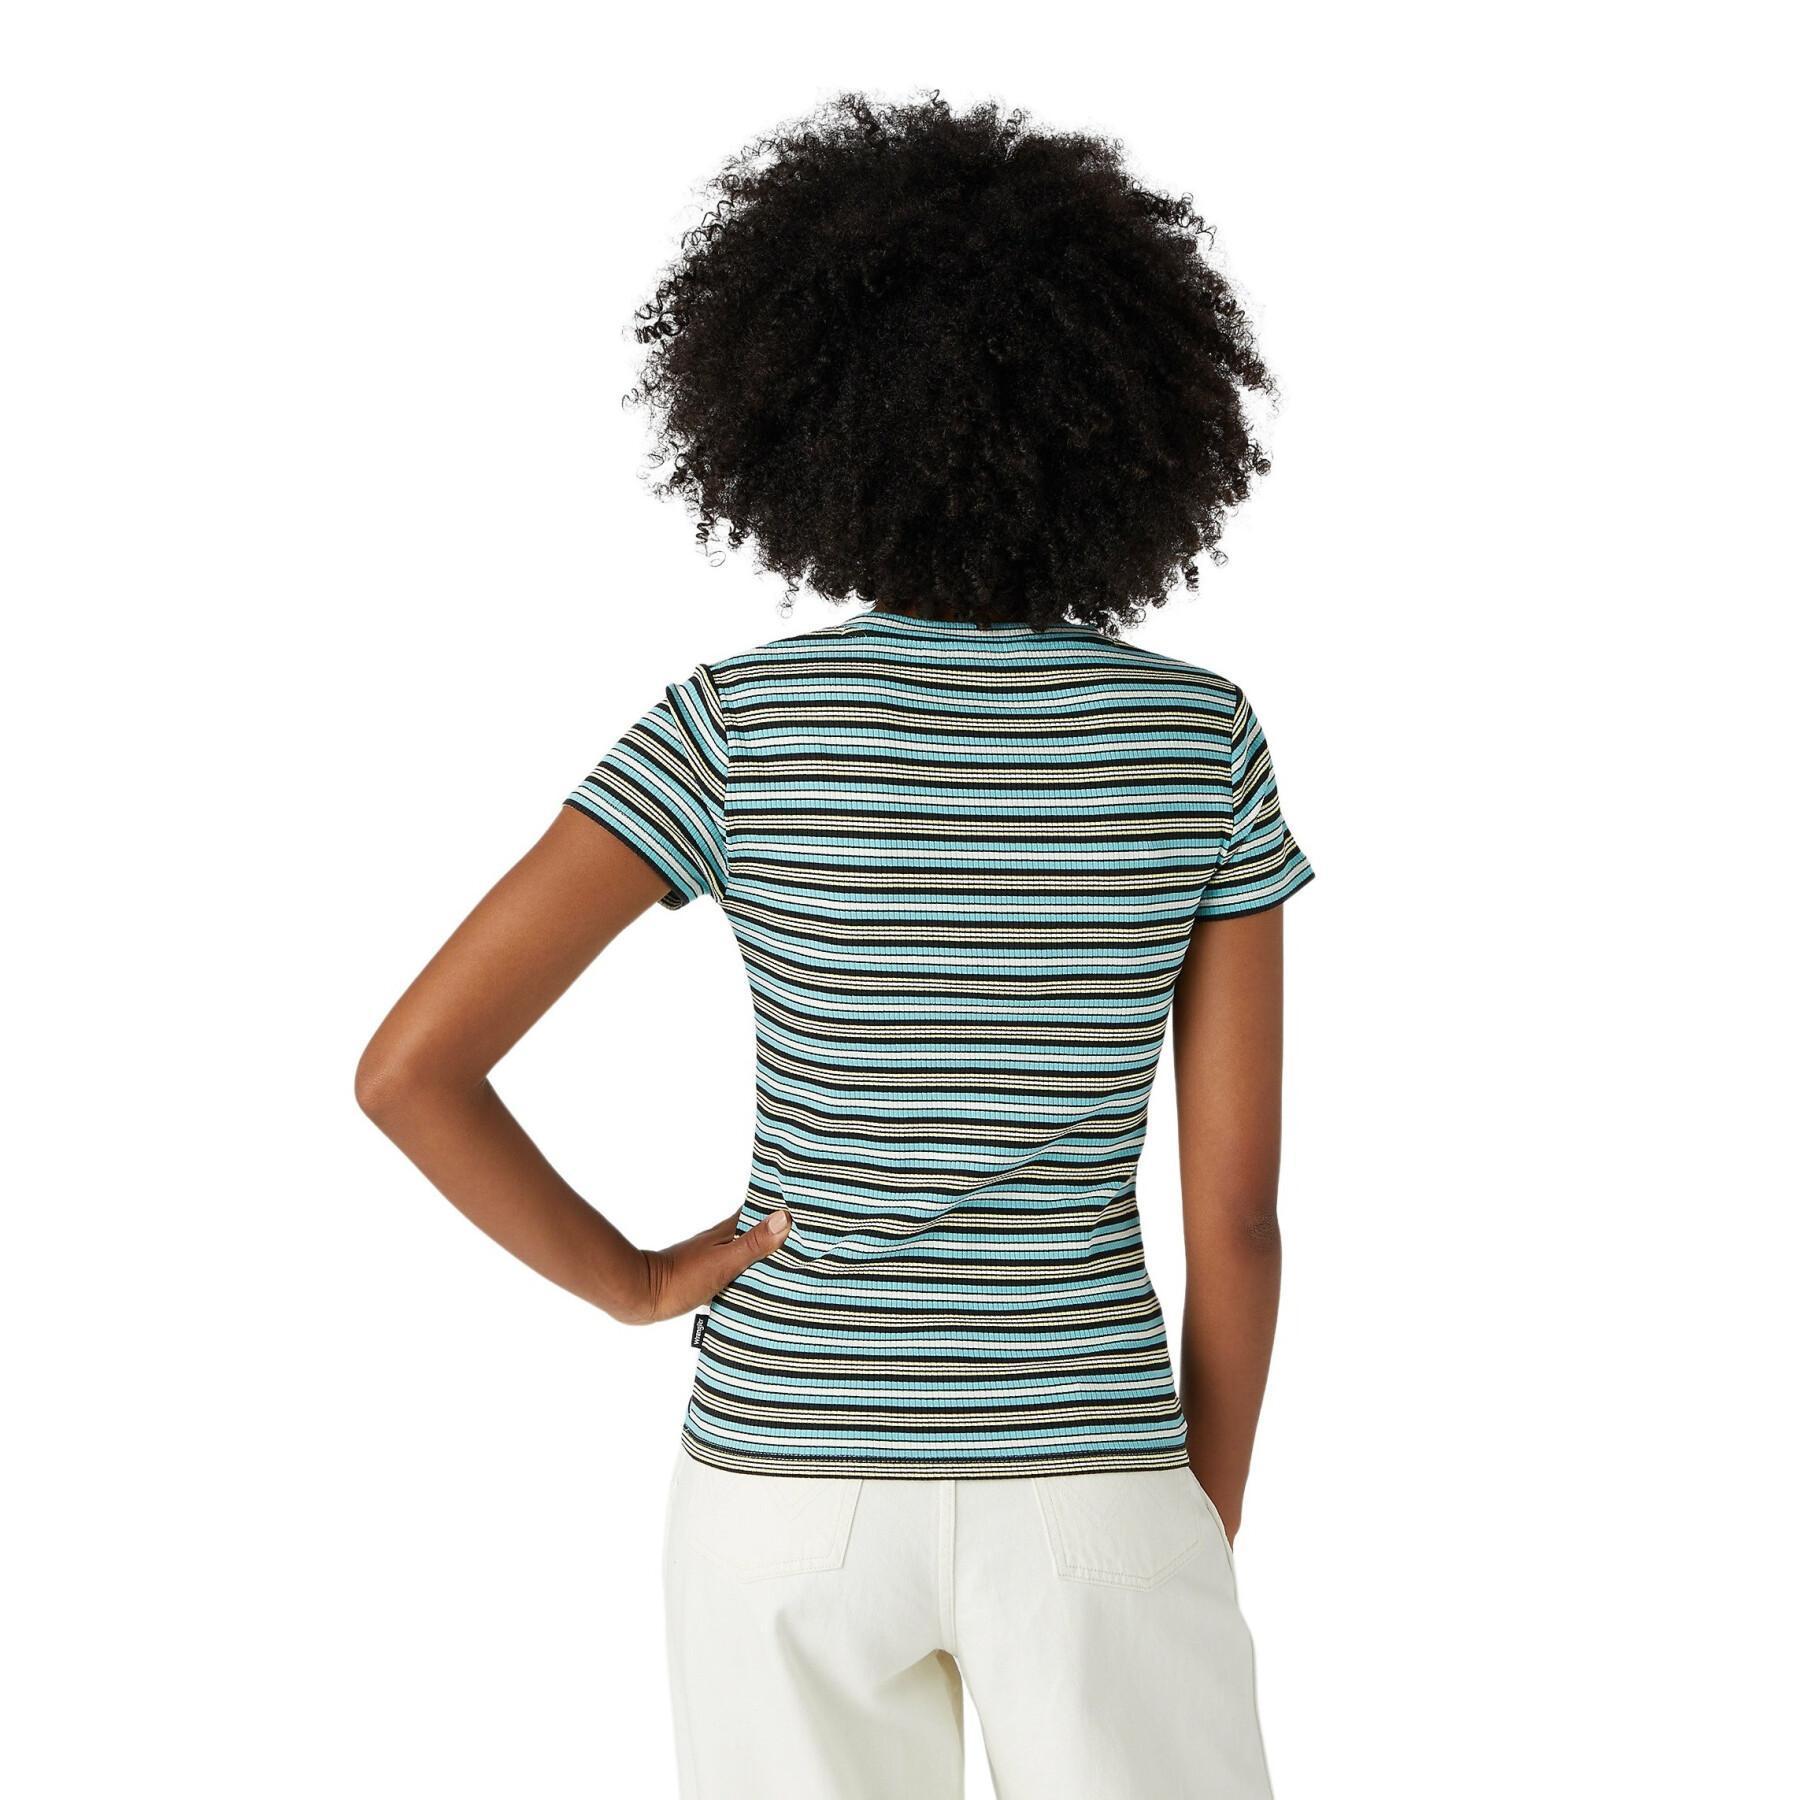 Camiseta feminina Wrangler slim stripe